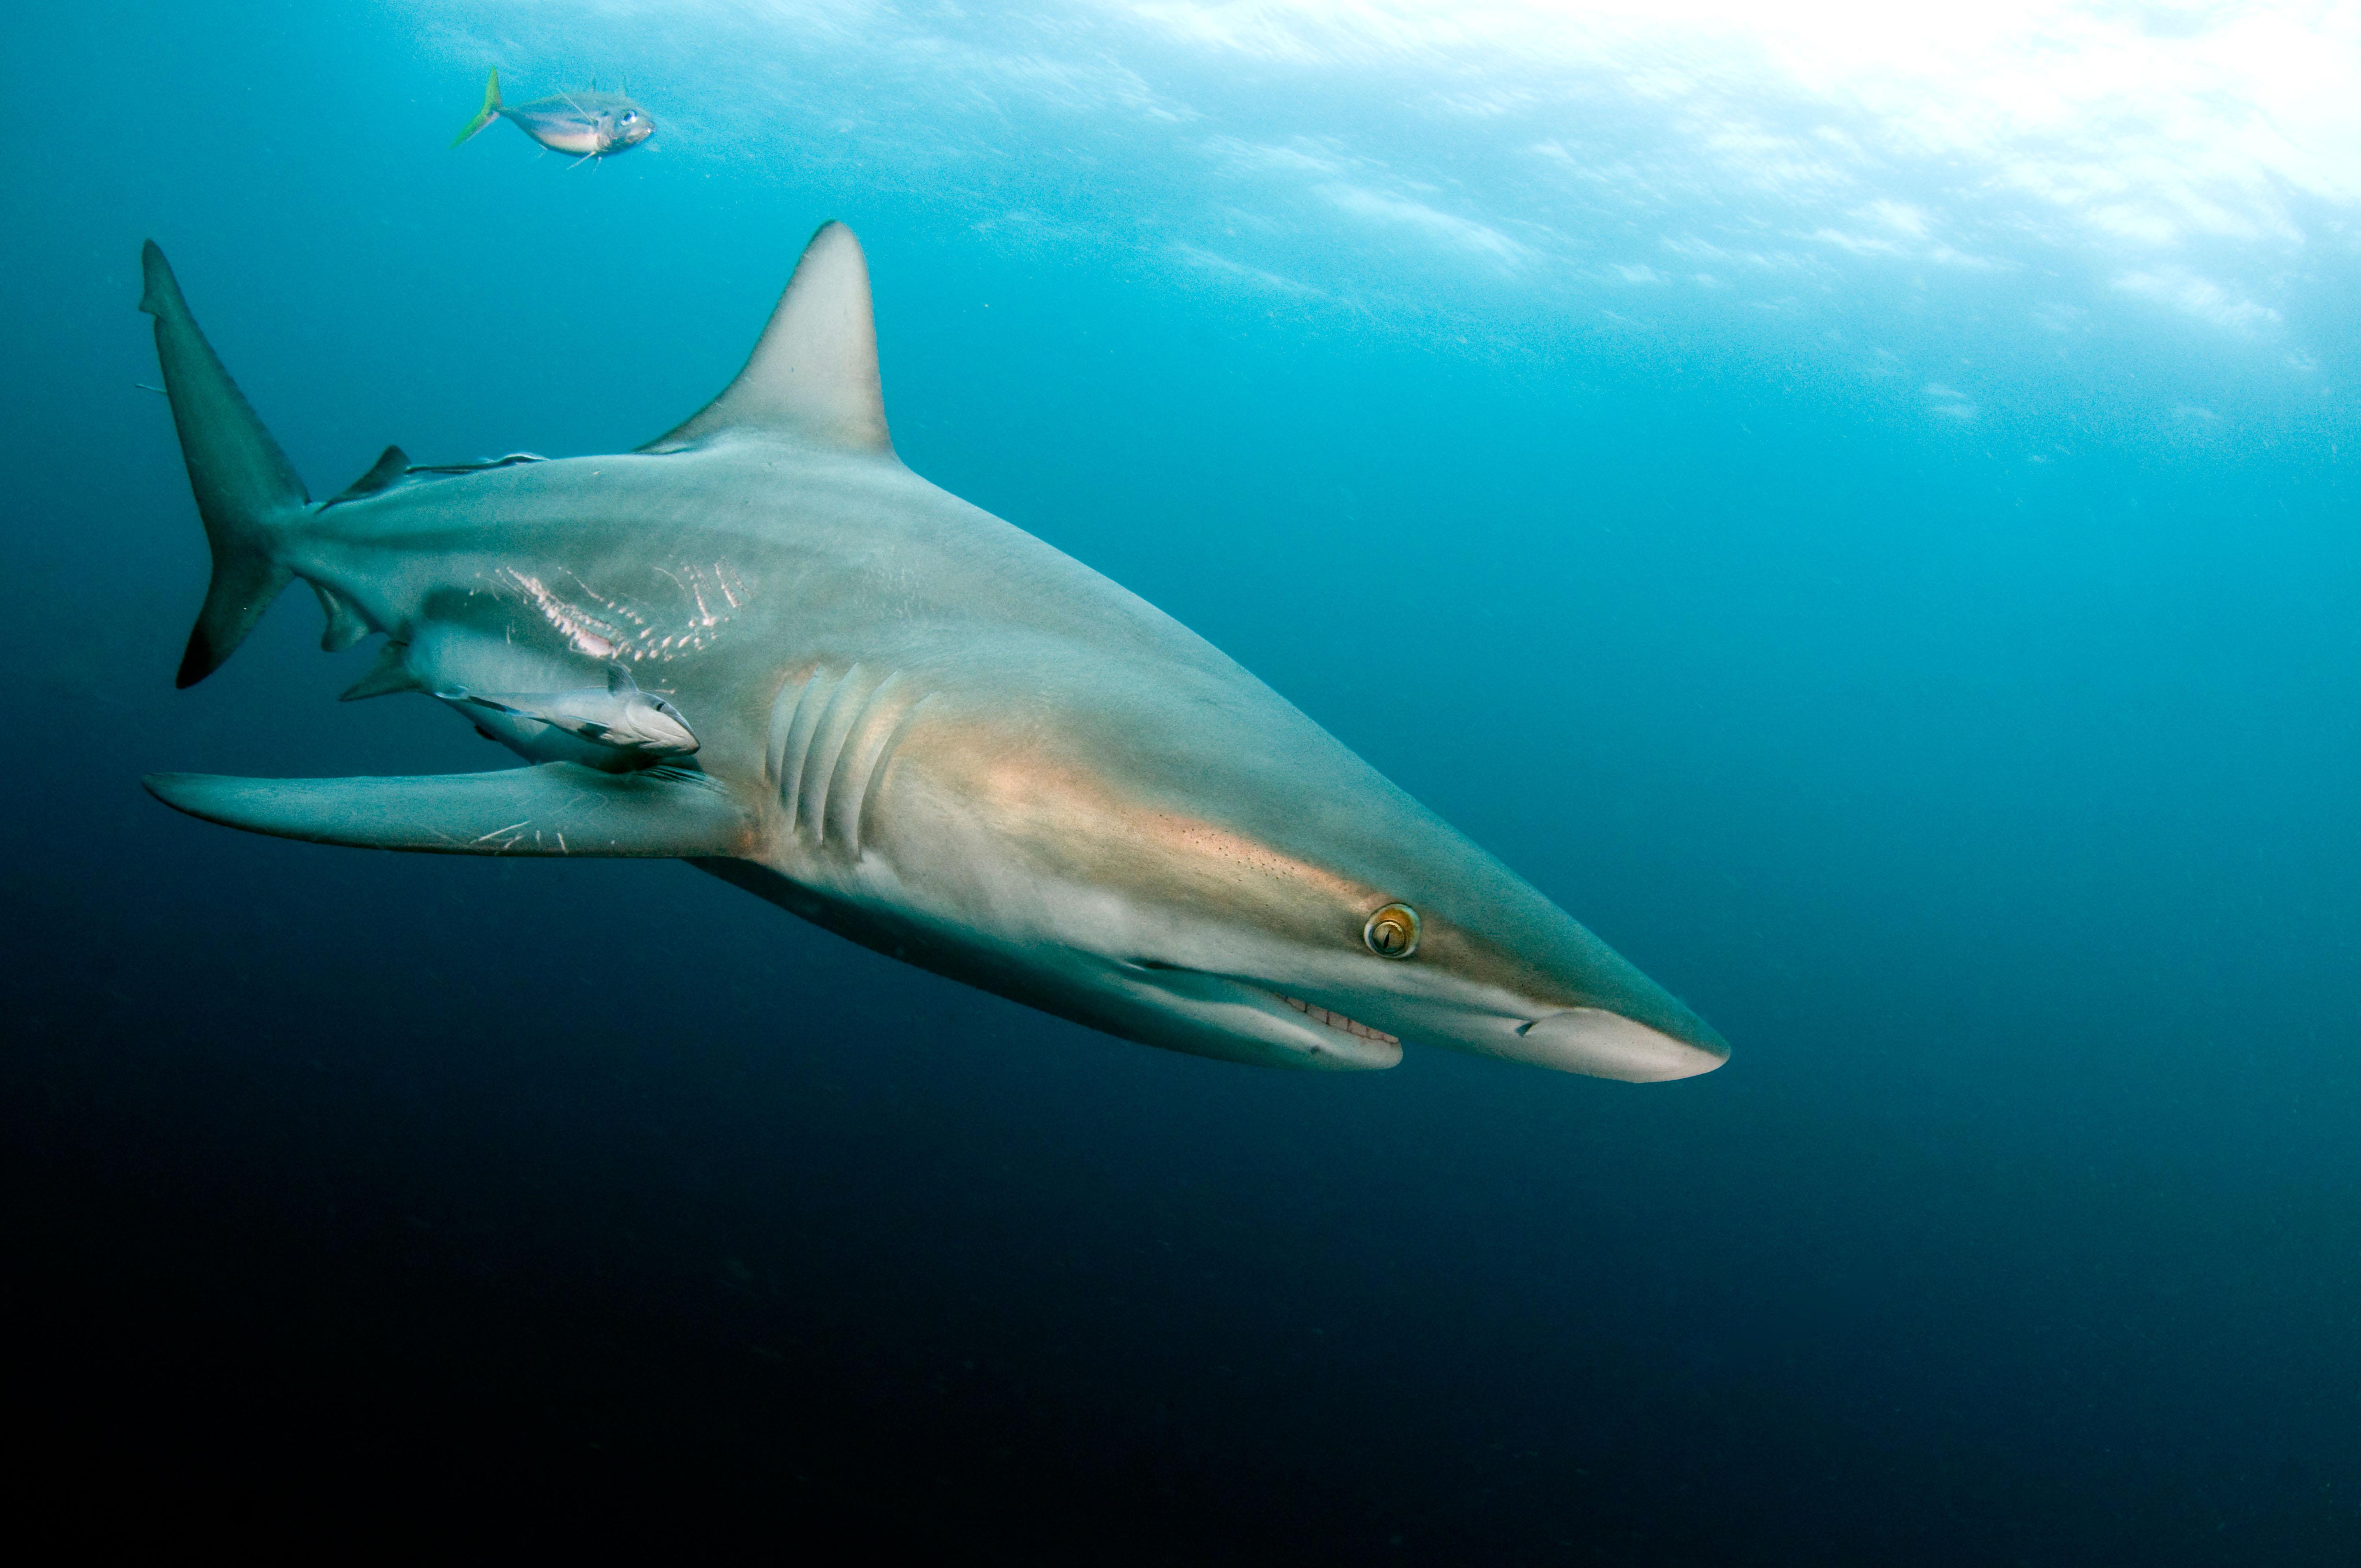 «Существование приблизительно 46 различных видов акул в Средиземном море - 16 из них имеют длину три и более метров и 15 - потенциально опасные виды - делает неизбежным случайное столкновение между людьми и этими животными в наиболее часто посещаемом и наиболее посещаемом море» «